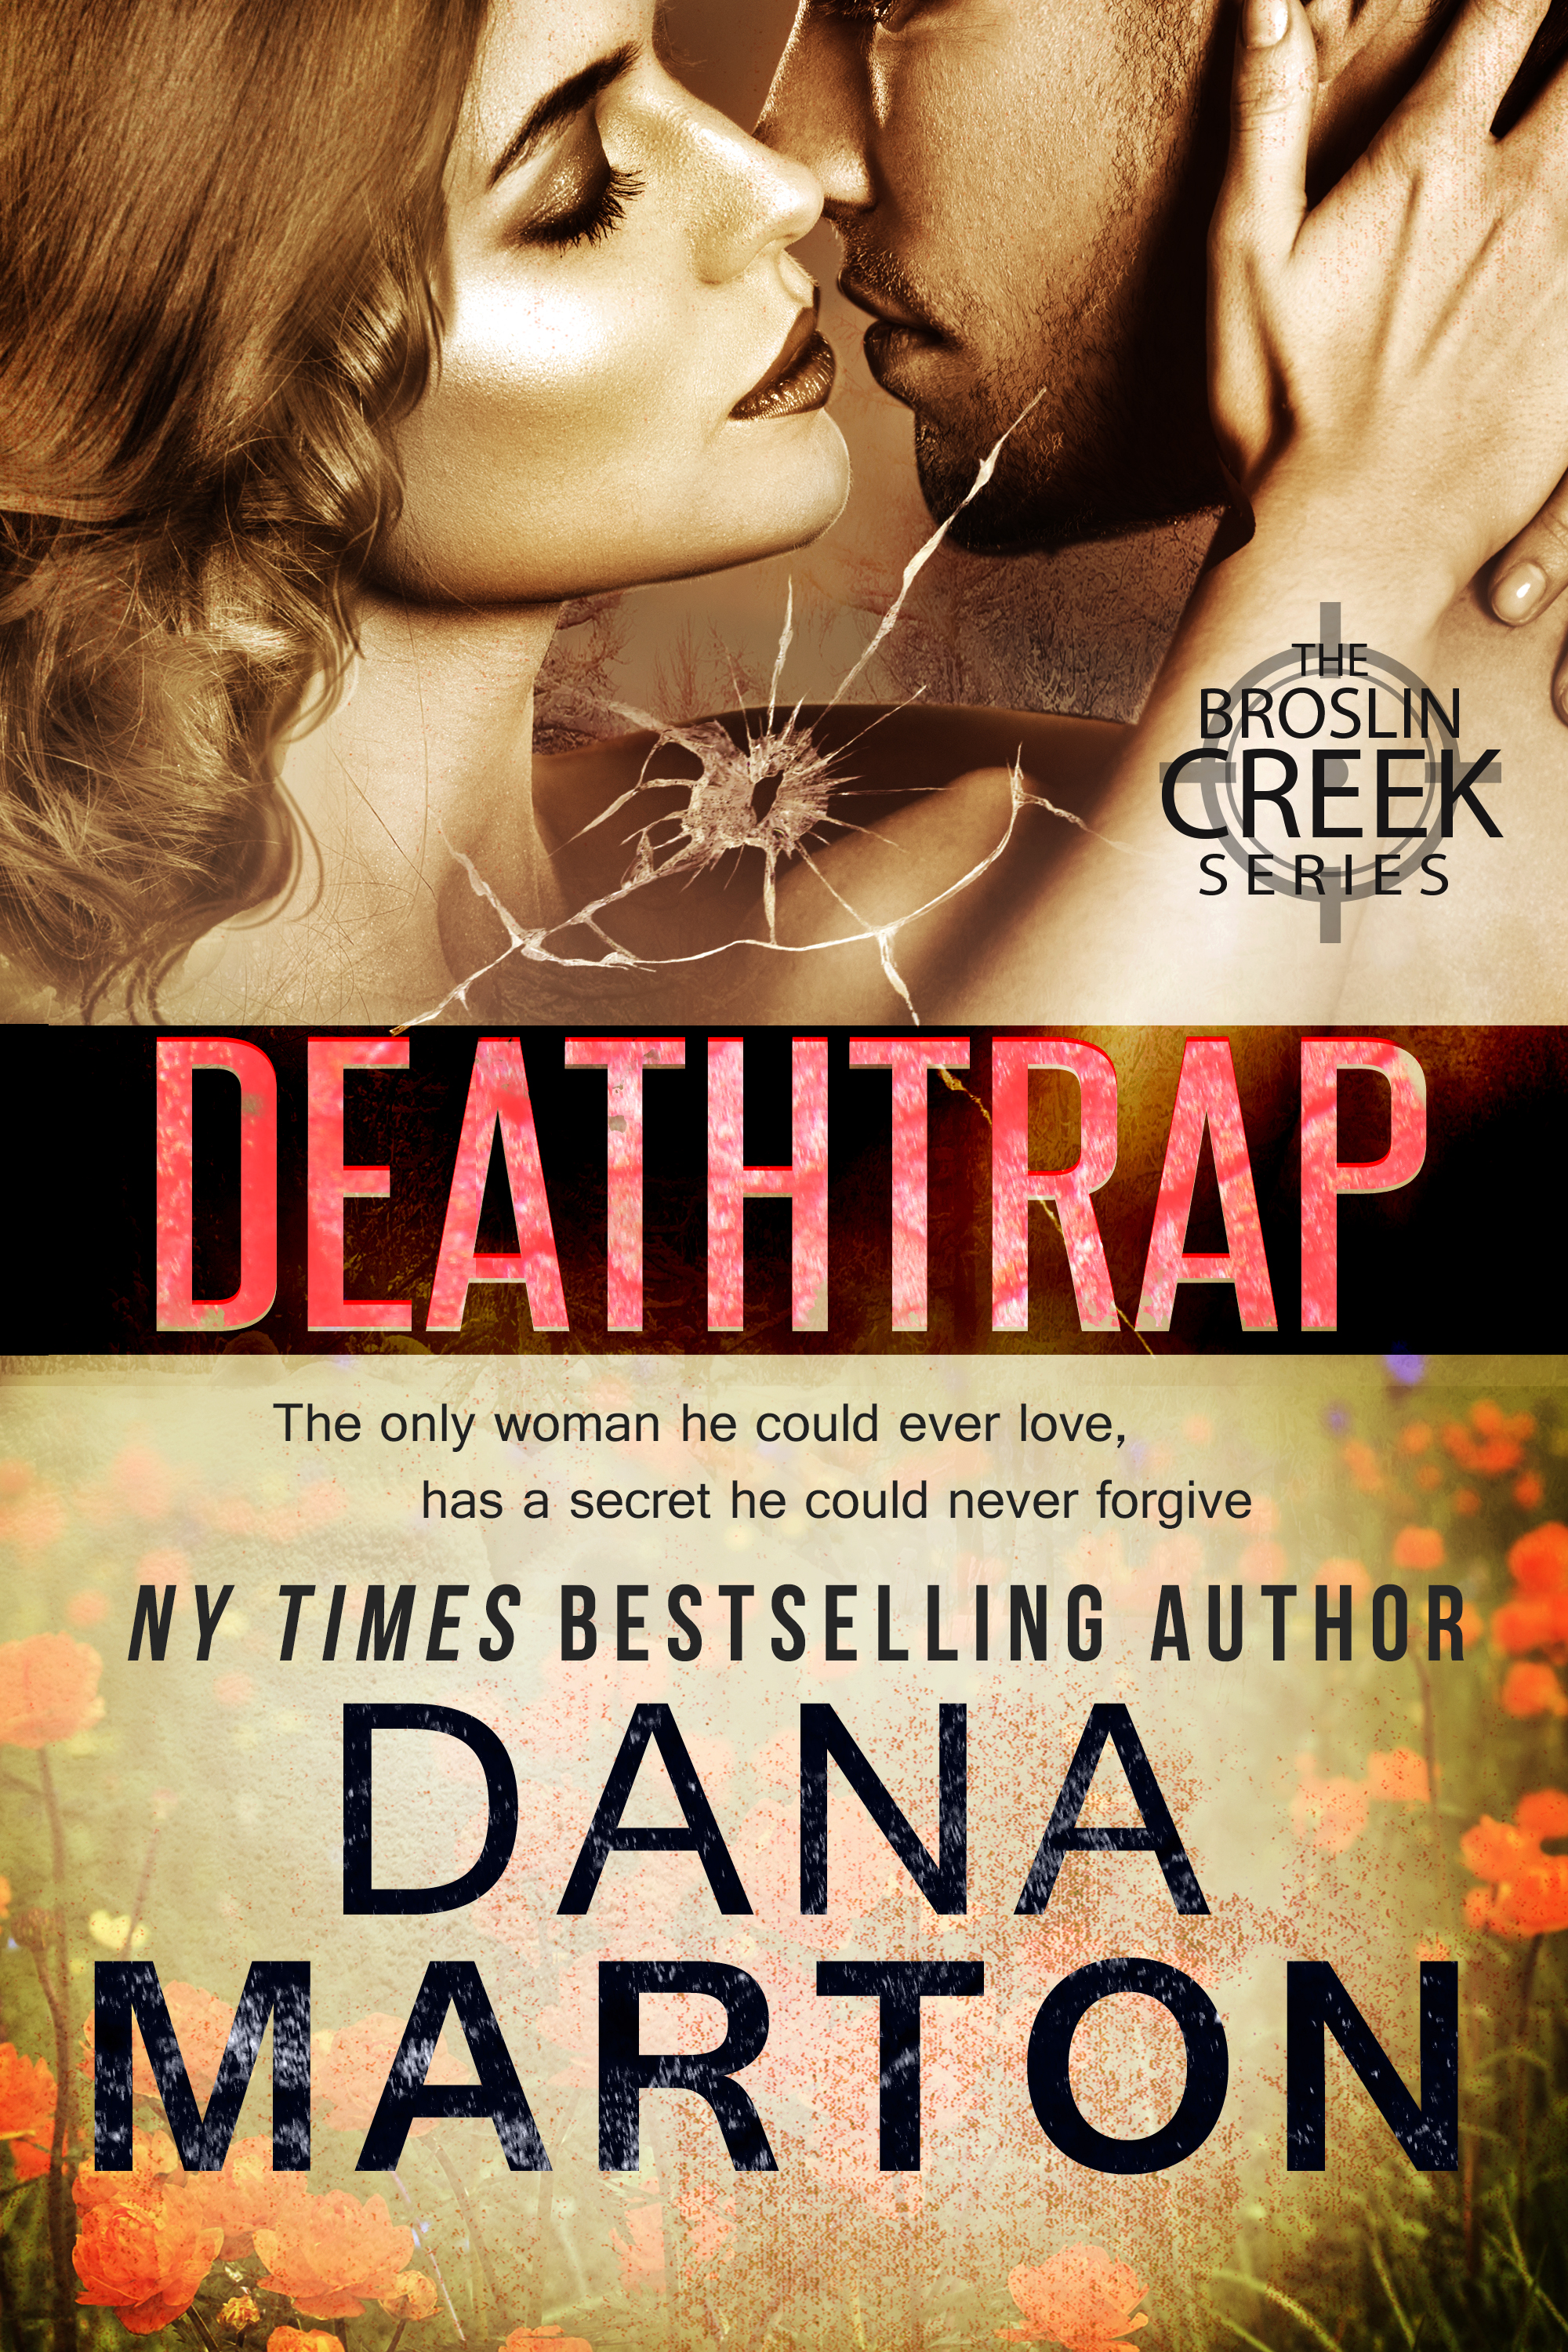 Deathtrap by Dana Marton